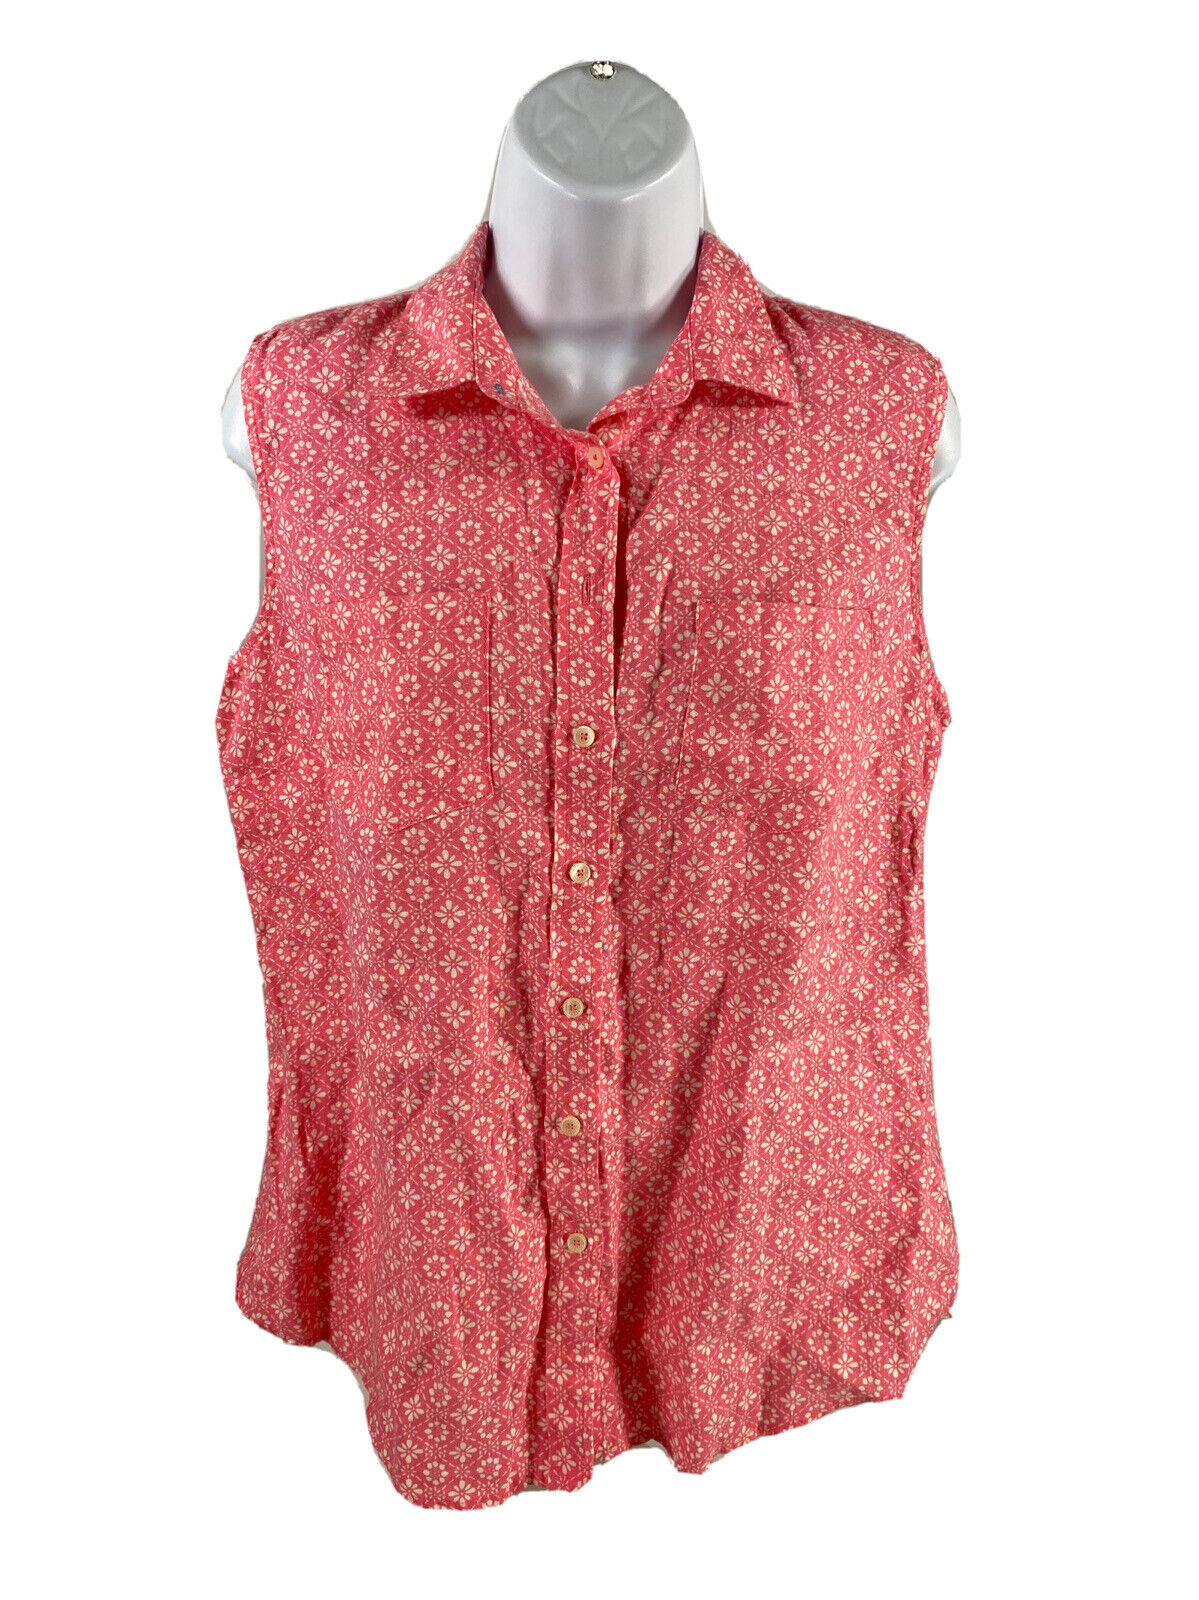 Talbots Women's Pink Linen Short Sleeve Button Up Tank Top - M